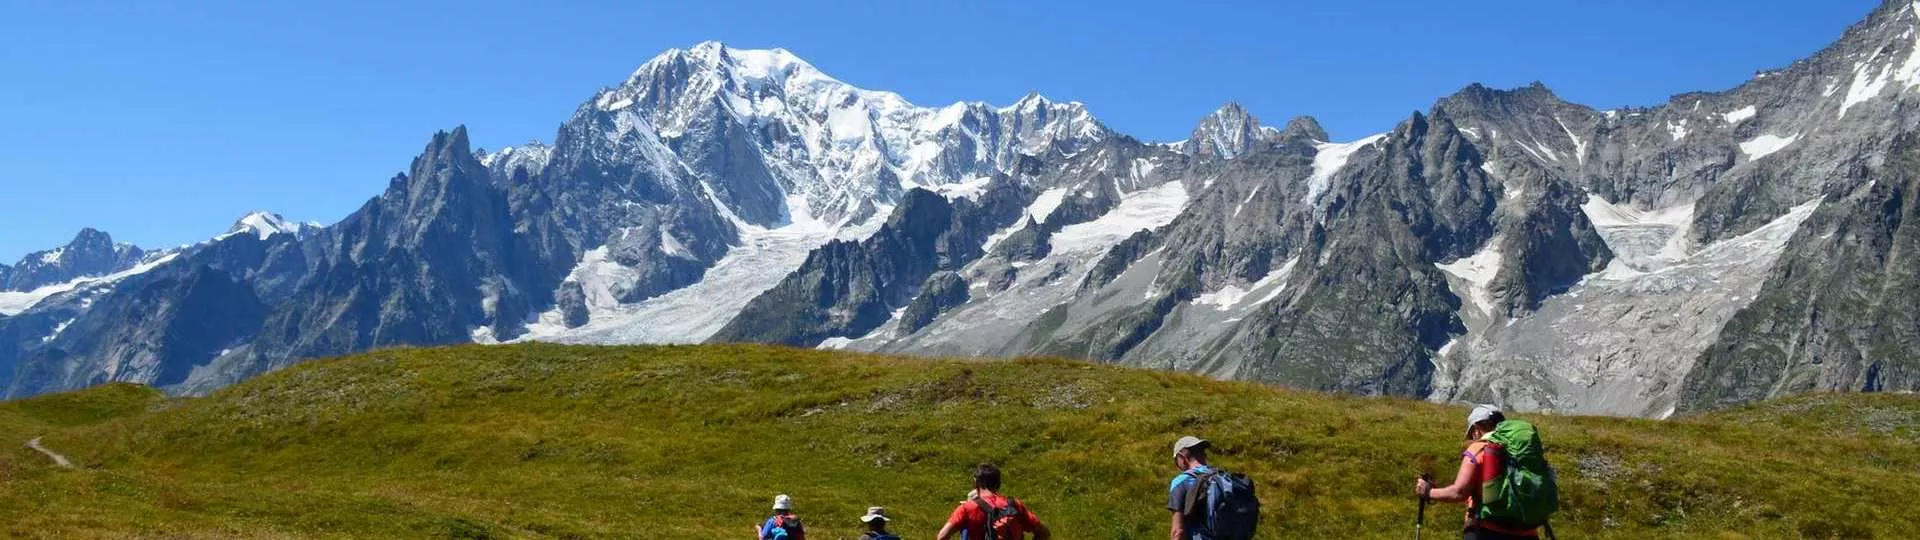 Tour du mont blanc - Le tour du Mont-Blanc en 7 jours - Randonnée